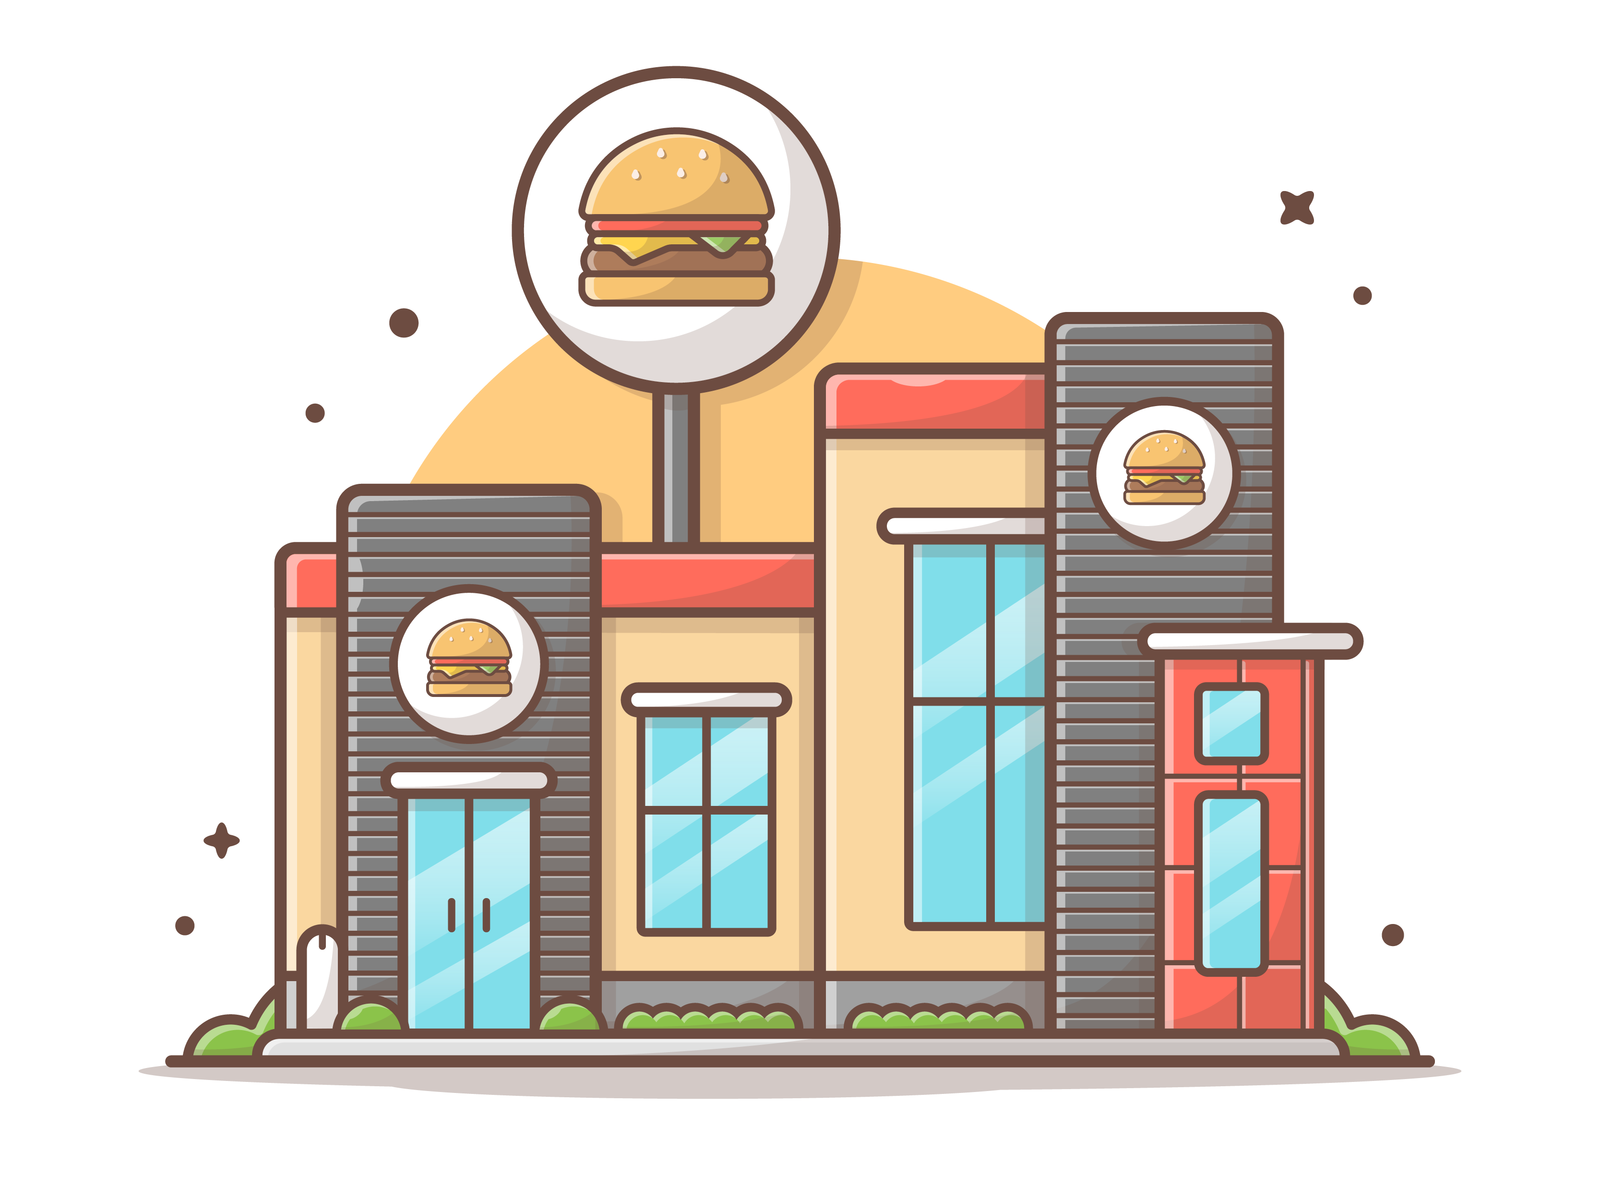 small burger shop design